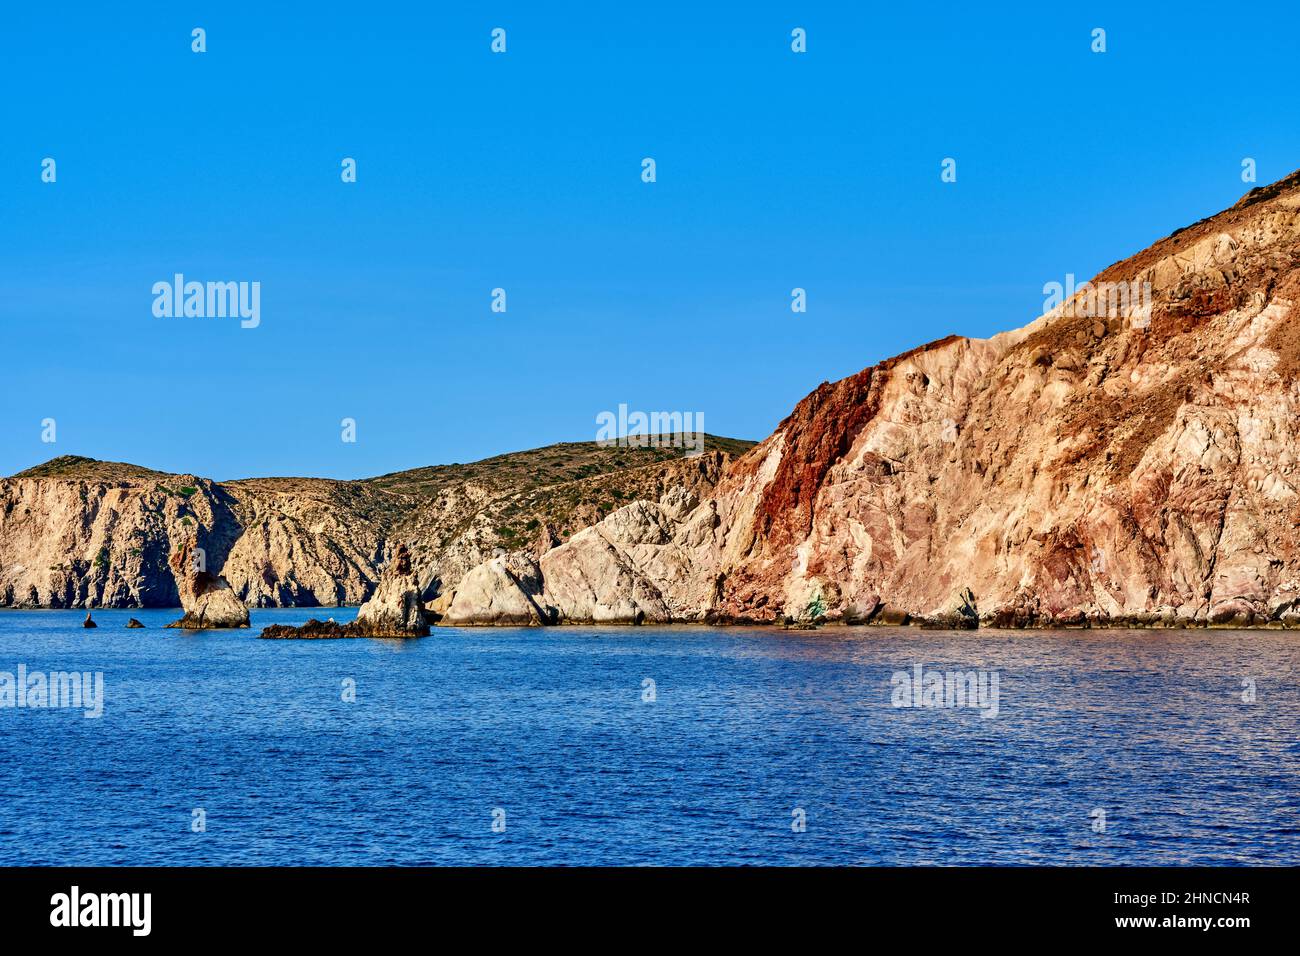 Schöne Aussicht auf hohe Hügel Hang der Insel im Mittelmeer. Blaues Wasser, klarer blauer Himmel, strahlender Sonnenschein, Sommertag, Felsen und Inselchen Stockfoto